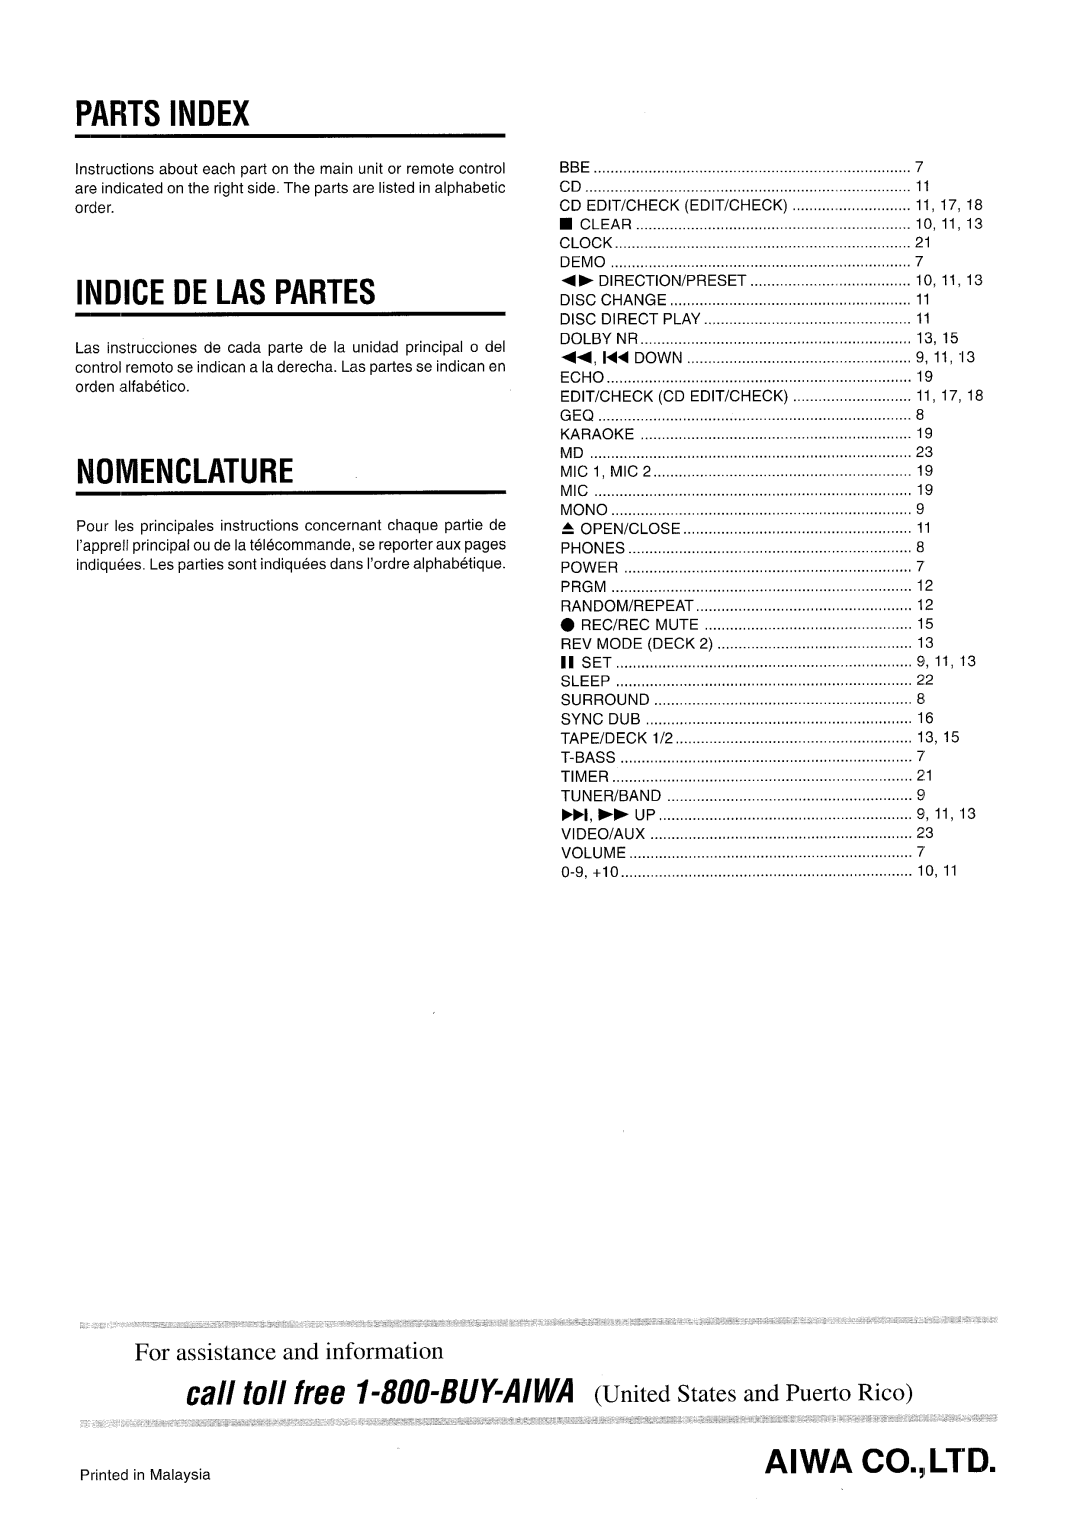 Aiwa CX-NA71 manual Pafits Index, Indice De Las Partes, Nomenclature, Cfl// ~0// free 1-80&6uy-A/wA 